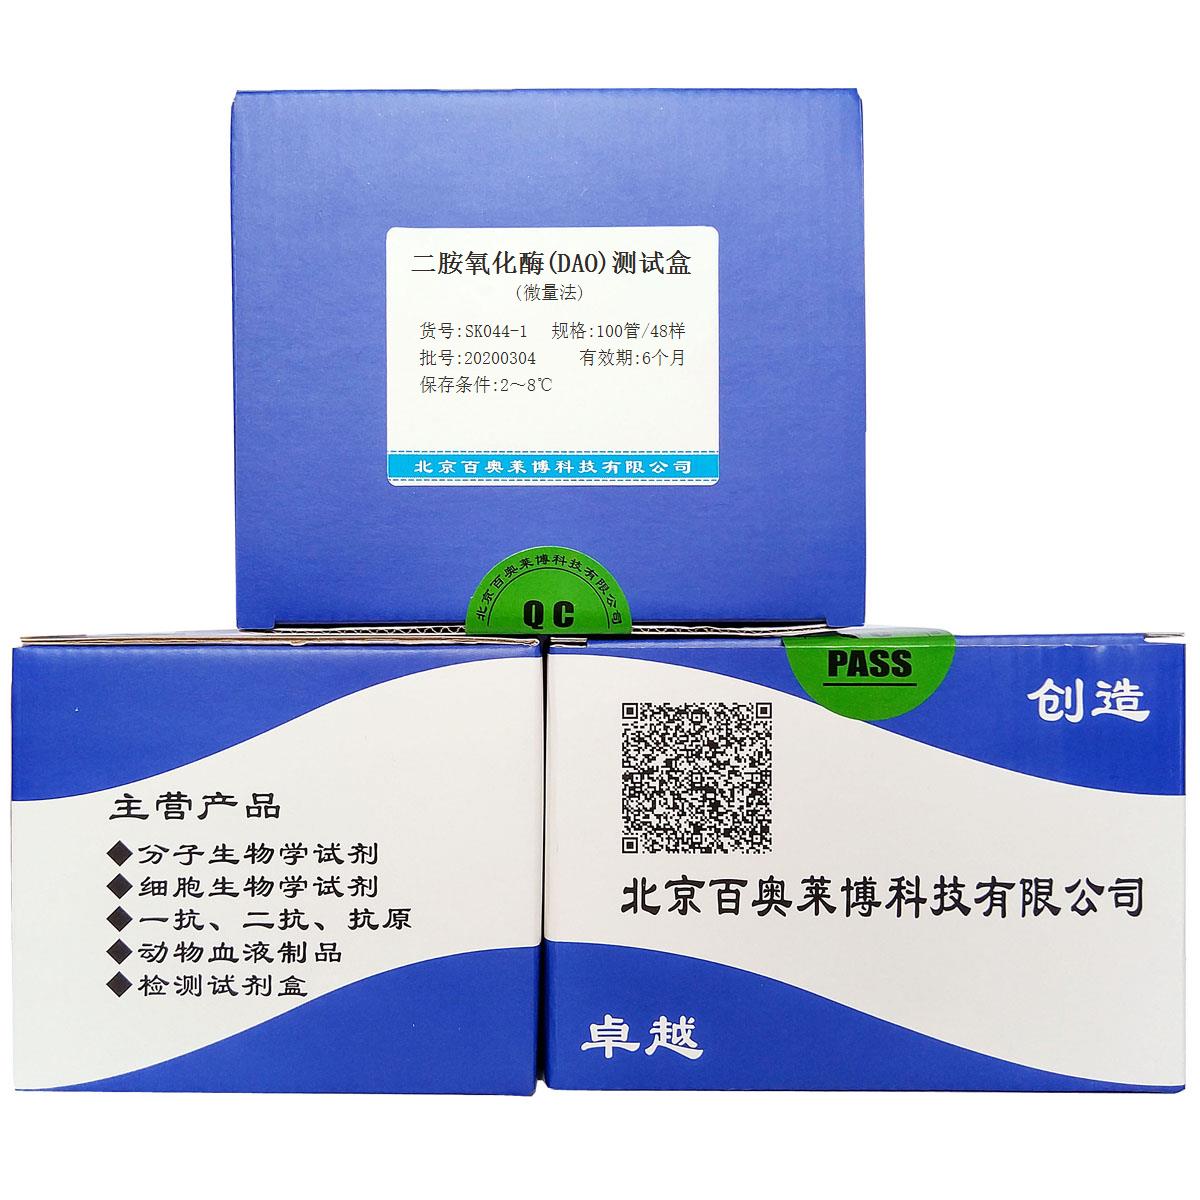 二胺氧化酶(DAO)测试盒(微量法)北京品牌